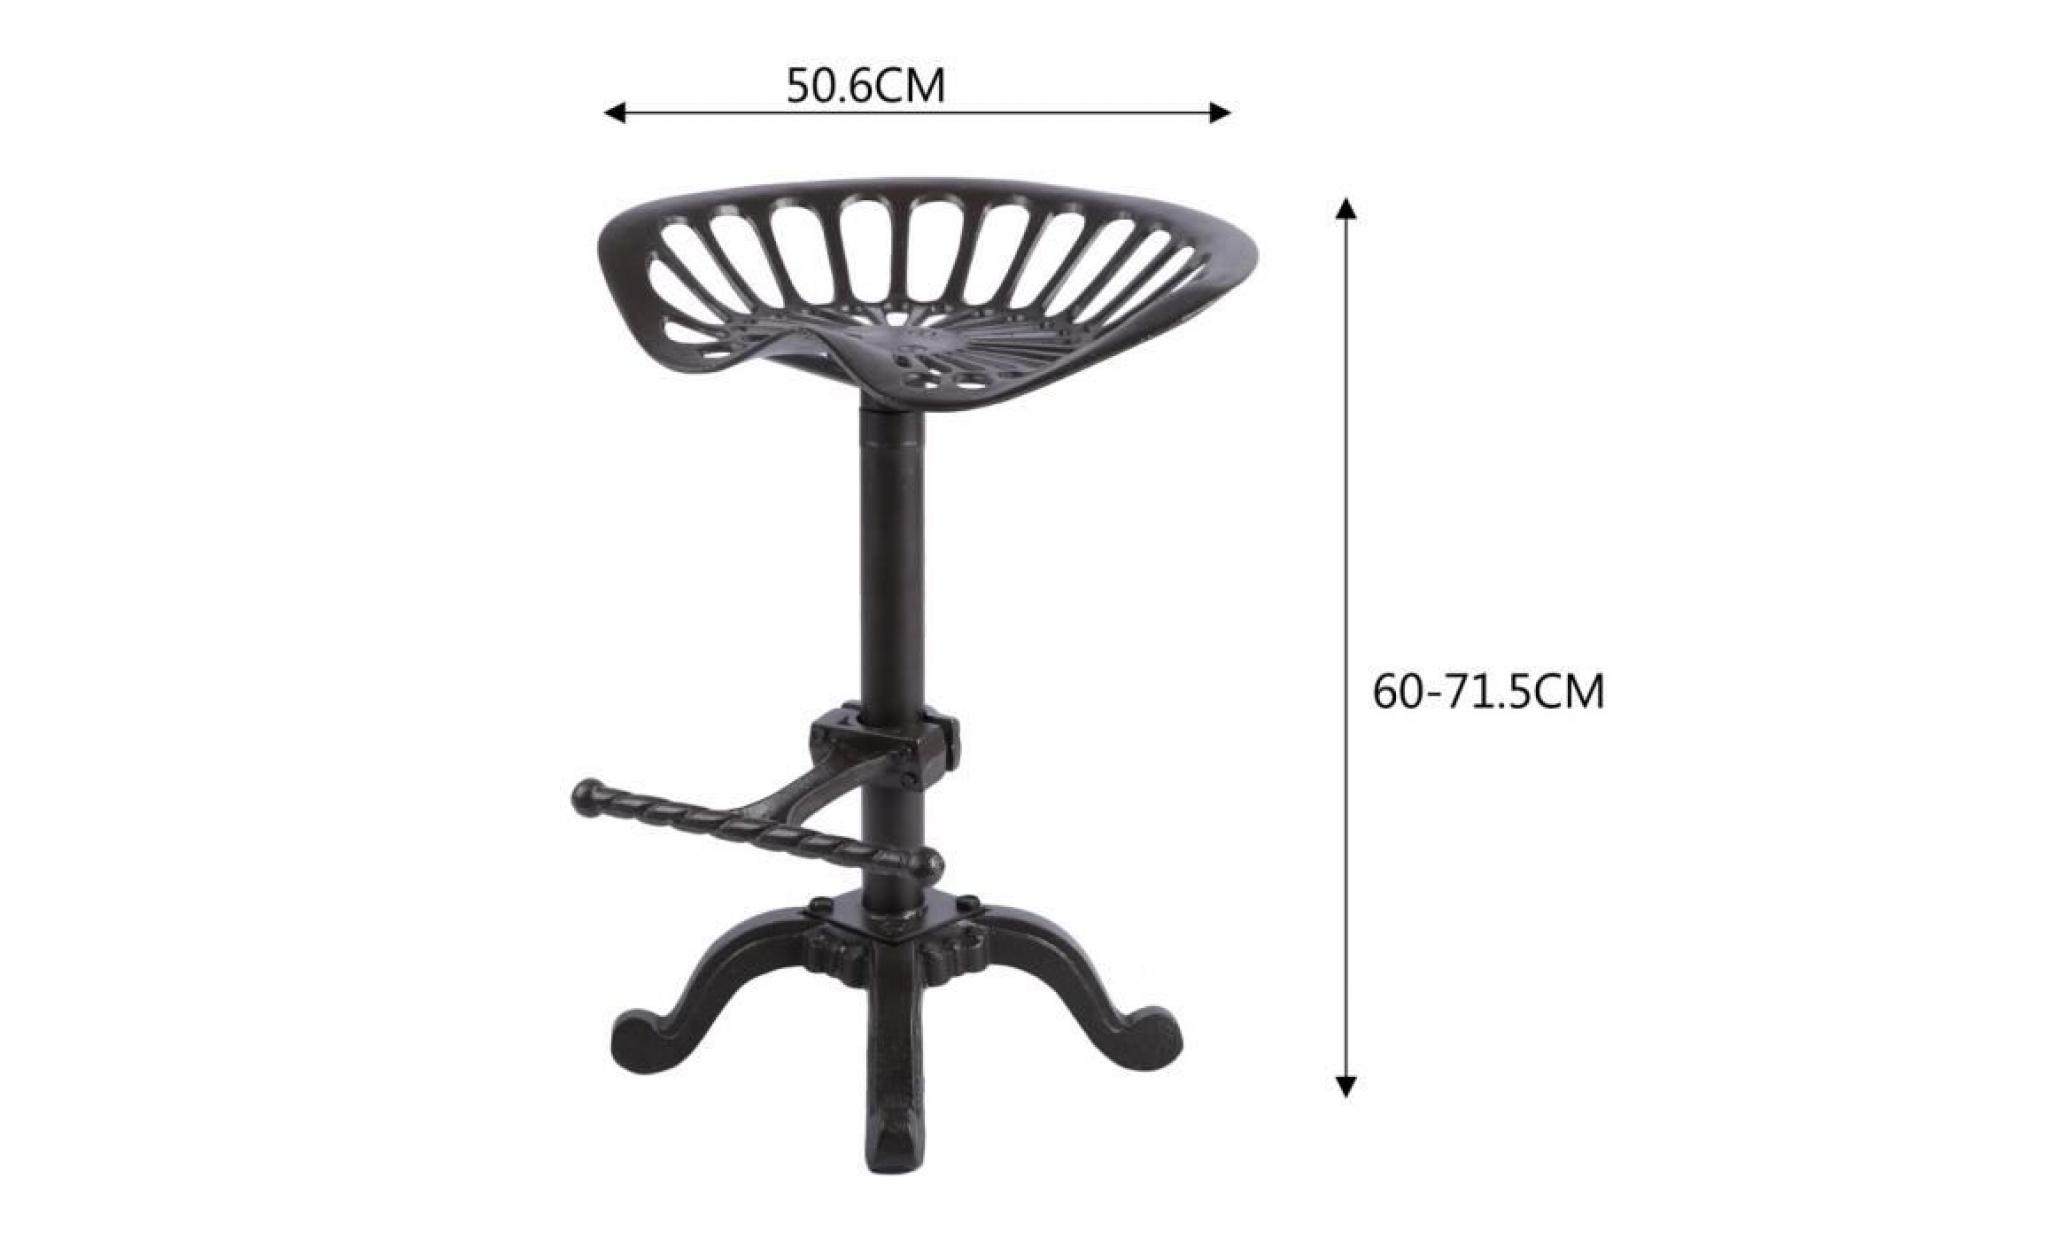 tabouret de bar   en fonte   chaise de style industriel   50.5 * 36 * 60 71.5cm pas cher